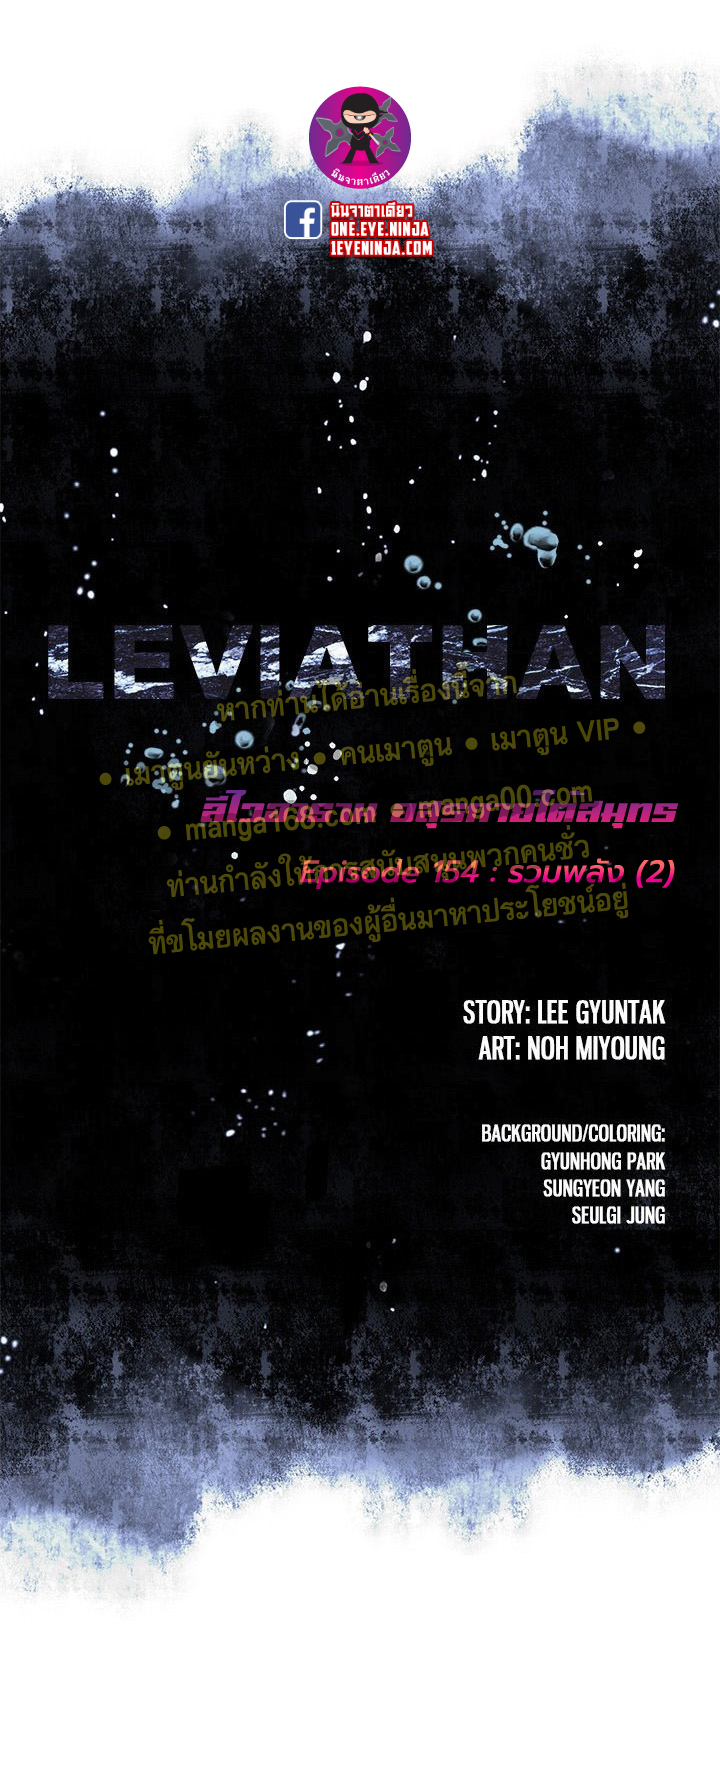 leviathan157 03